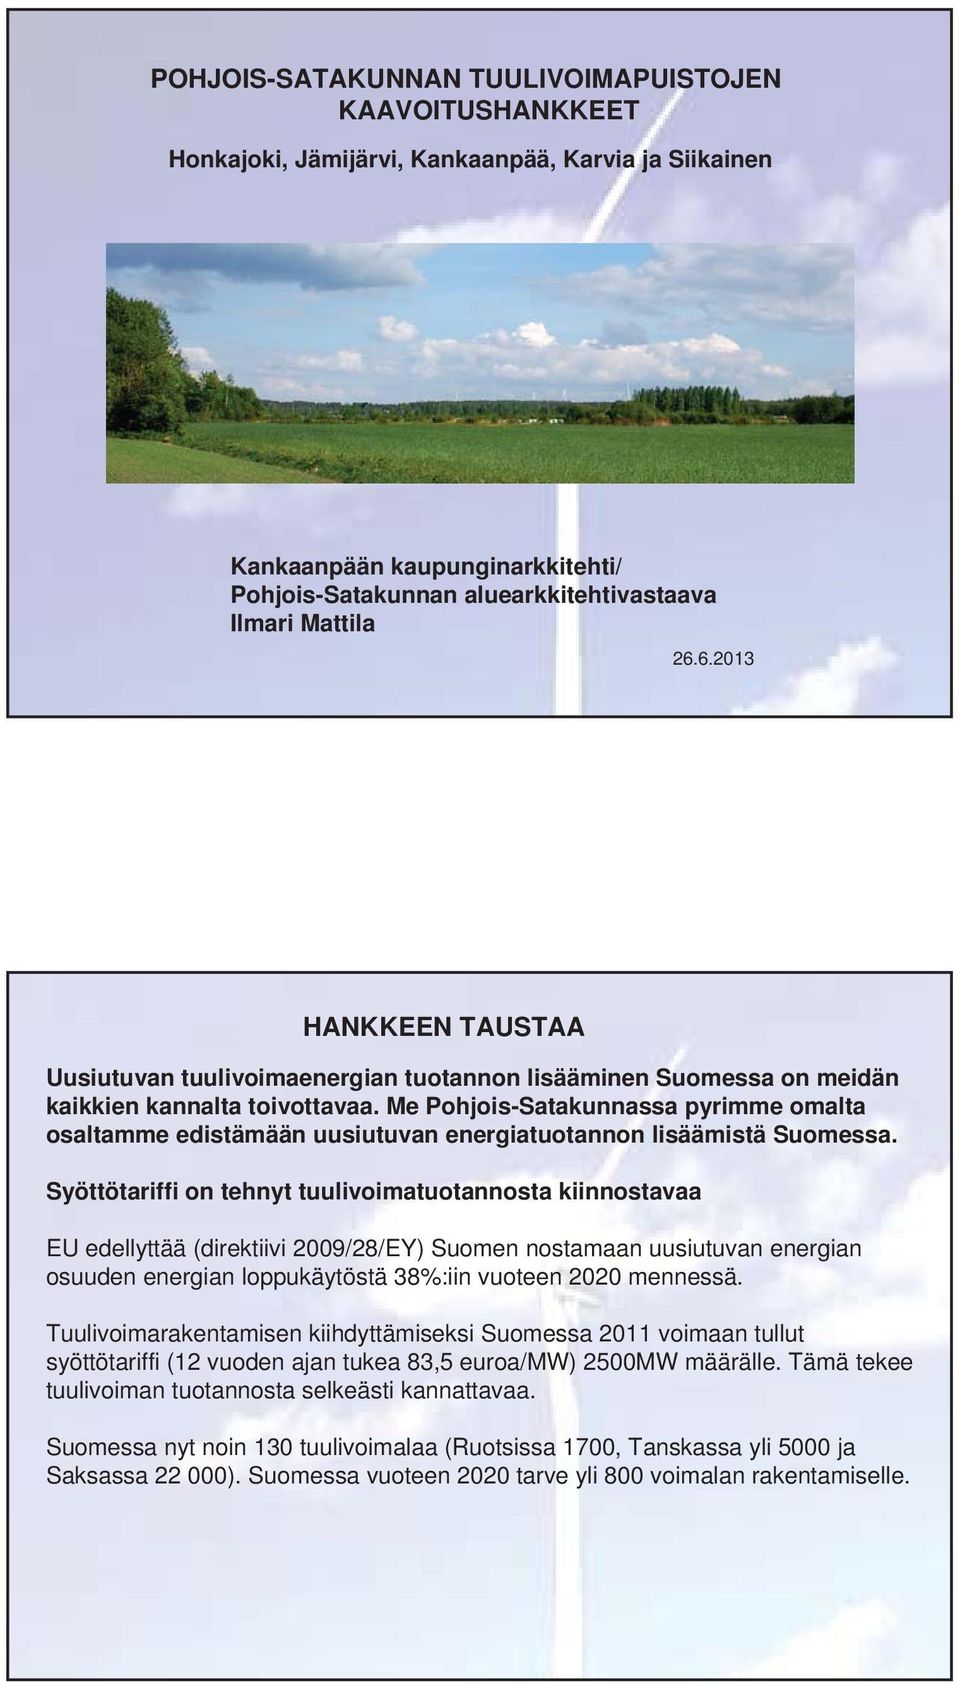 Me Pohjois-Satakunnassa pyrimme omalta osaltamme edistämään uusiutuvan energiatuotannon lisäämistä Suomessa.